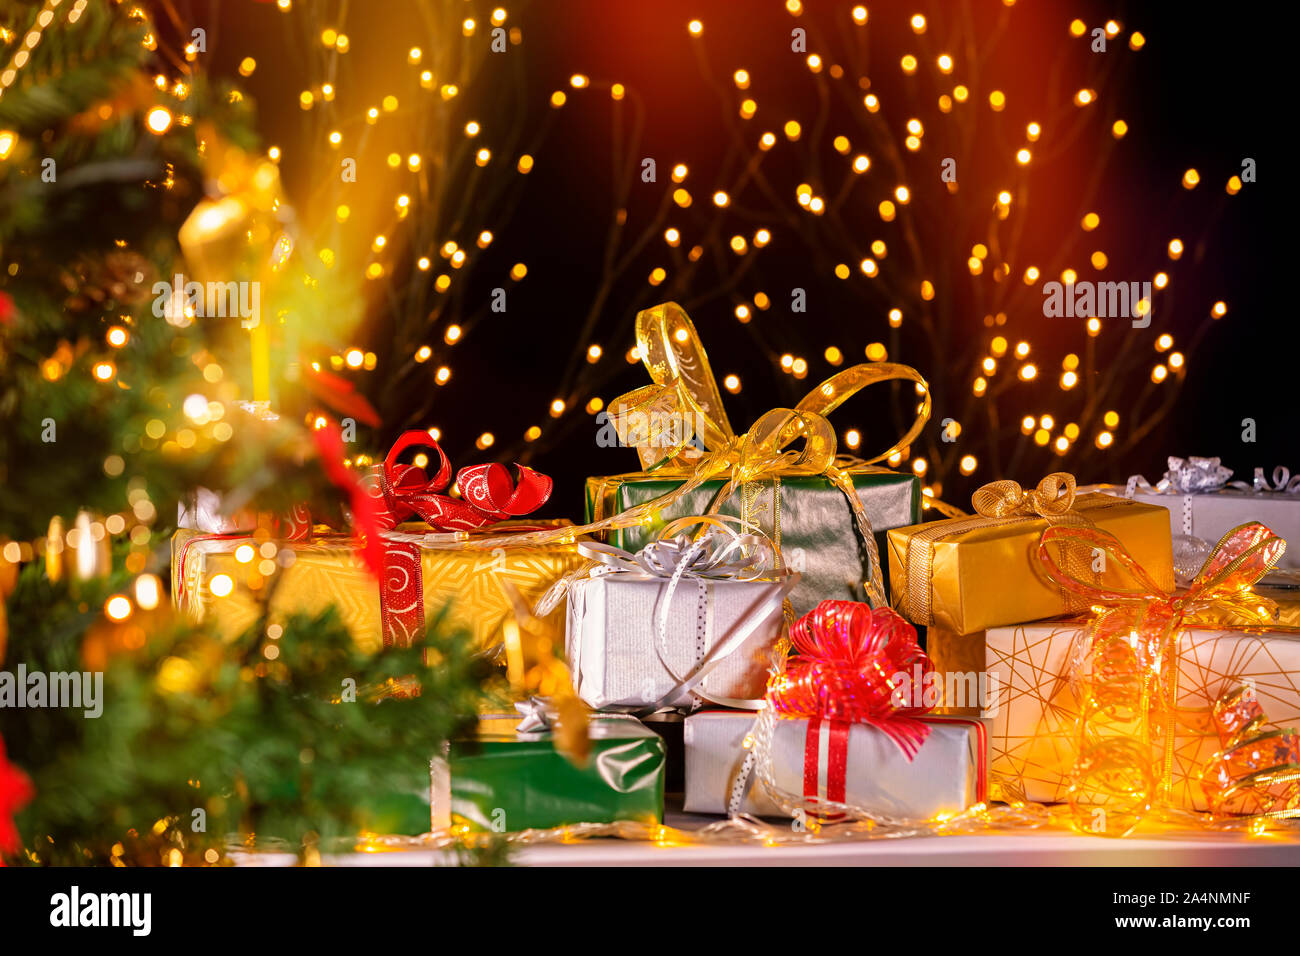 Pile de cadeaux emballés en vertu de l'arbre de Noël contre des particules de lumières. Beaucoup de cadeaux de Noël sous l'arbre. Selective focus on green box cadeau ! Banque D'Images